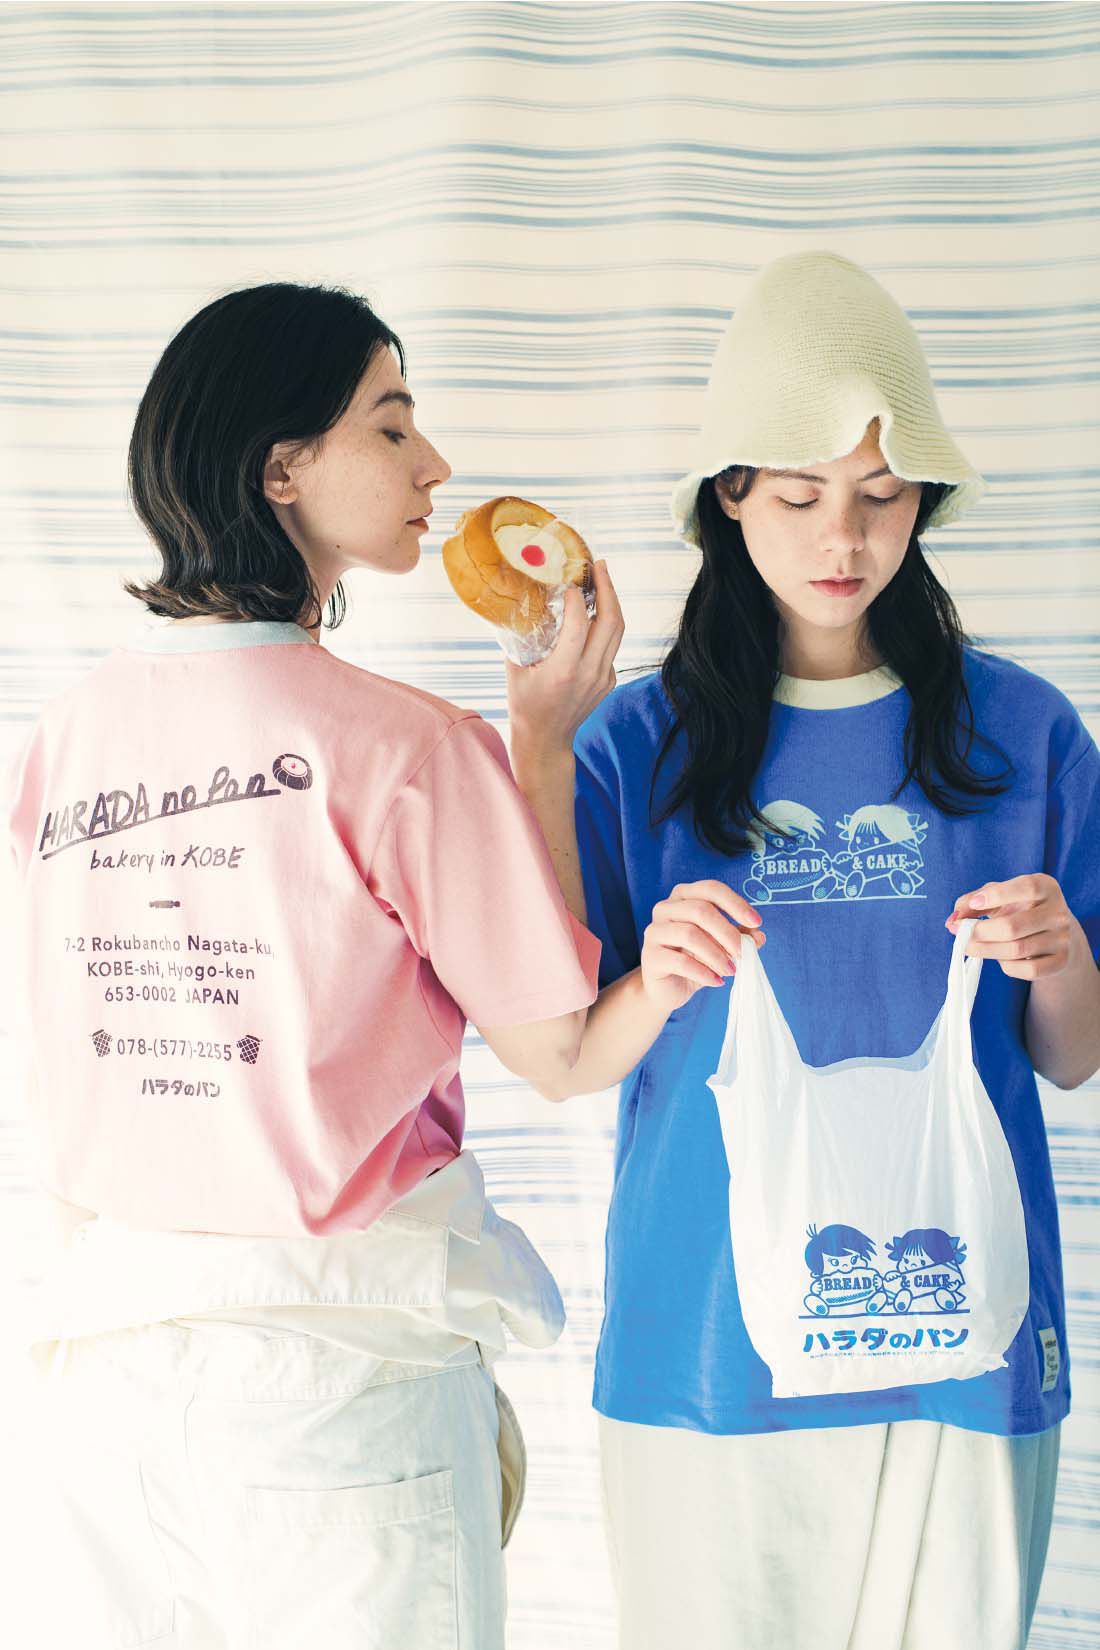 Live in  comfort|Live love cottonプロジェクト リブ イン コンフォート神戸のベーカリーハラダのパンさんとつくったオーガニックコットンのレトロかわいいTシャツ〈ジェイブルー〉